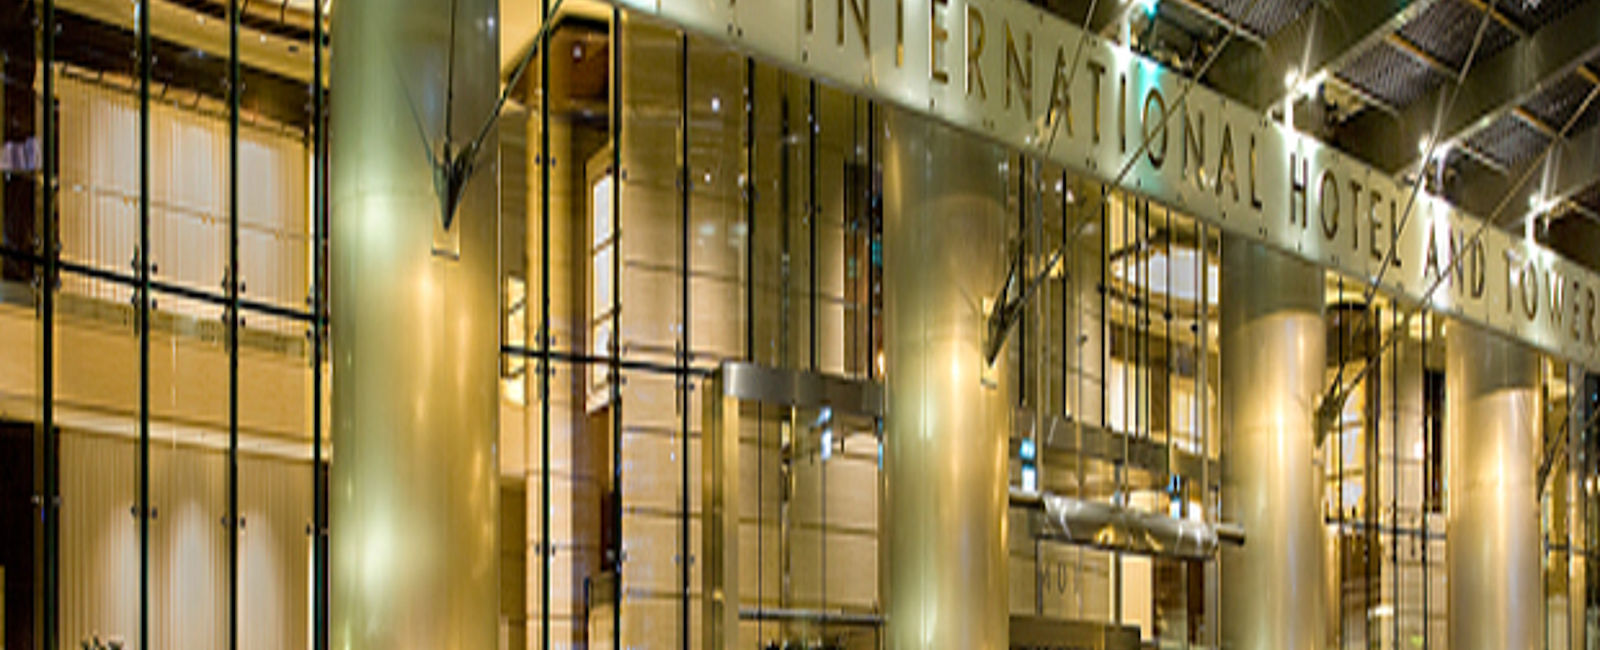 HOTEL TIPPS
 Trump International Hotel & Tower Chicago 
 Luxus Palast aus Glas inmitten von Chicago 